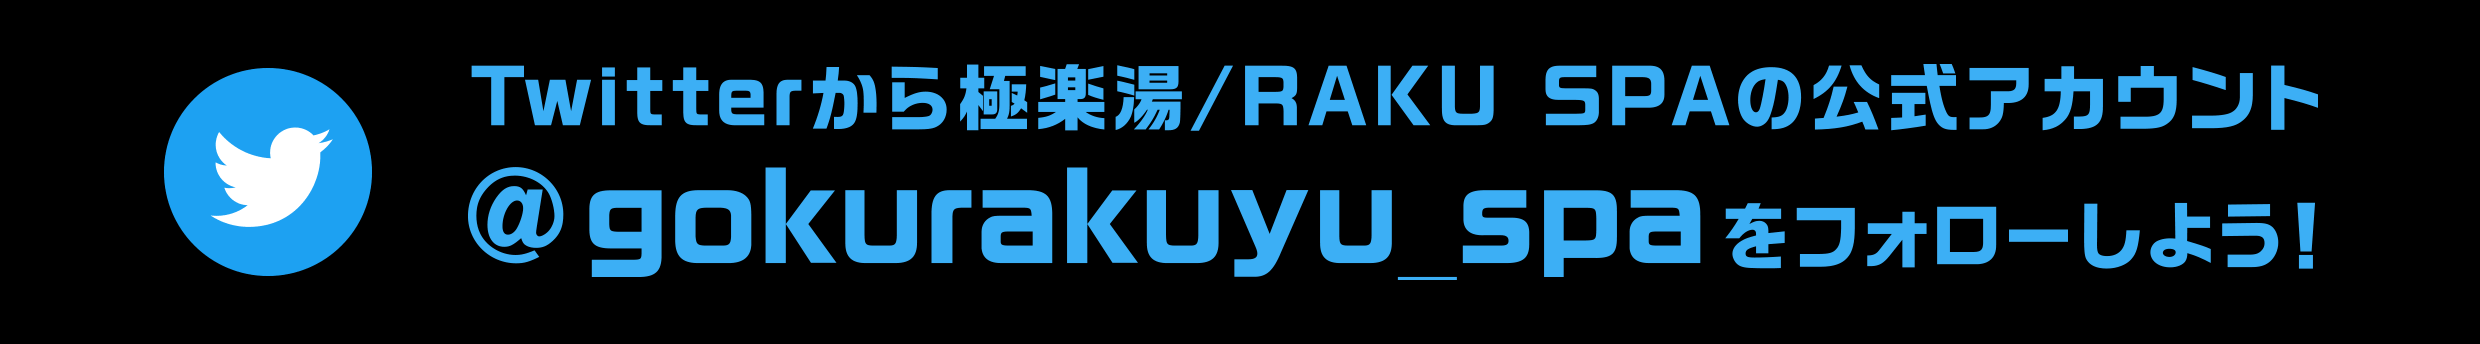 Twitterから極楽湯/RAKU SPAの公式アカウント @gokurakuyu_spaをフォローしよう